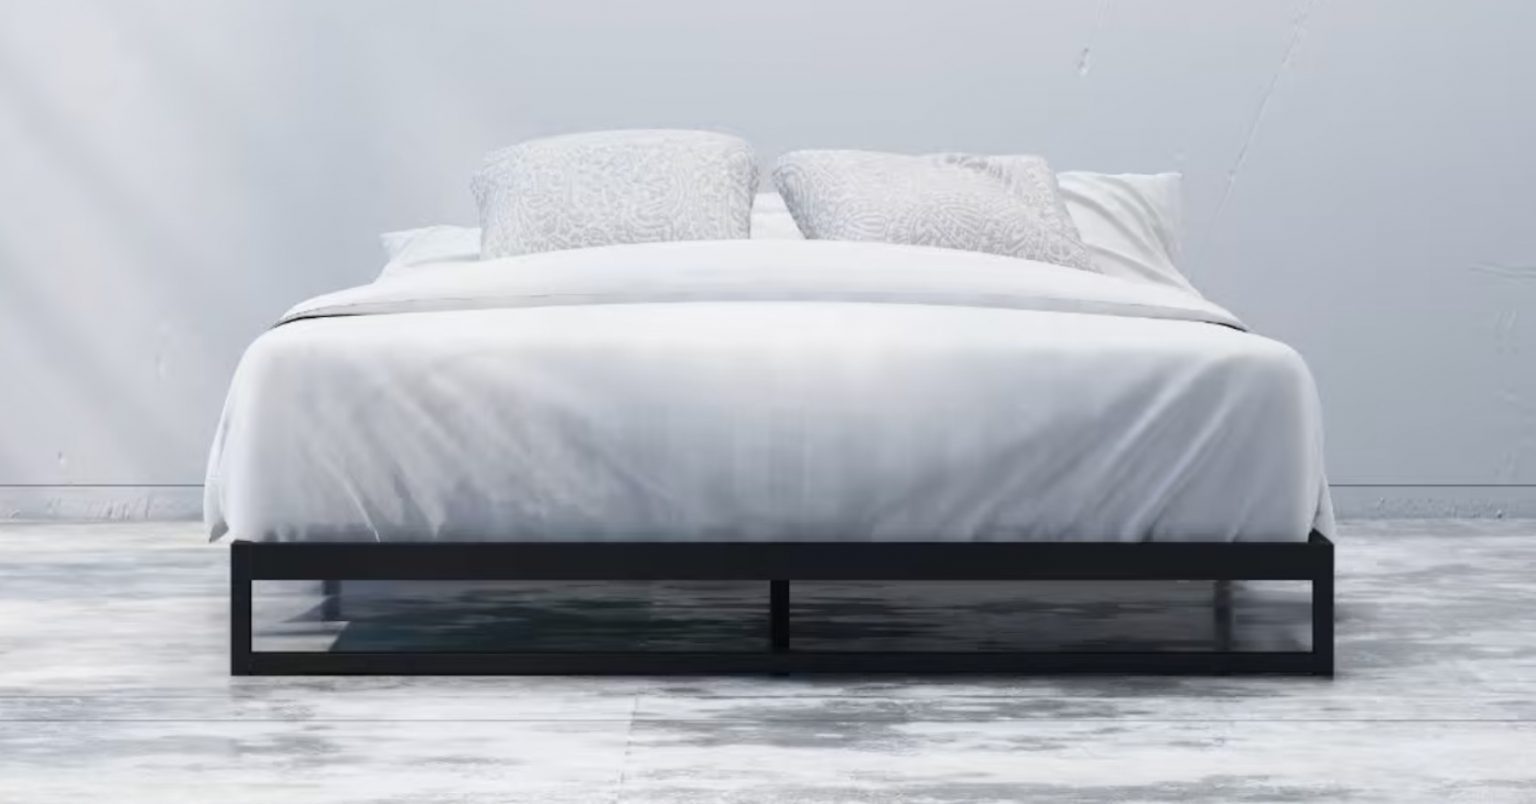 Best Metal Bed Frames Of 2021 Sleep, Casper Metal Bed Frame